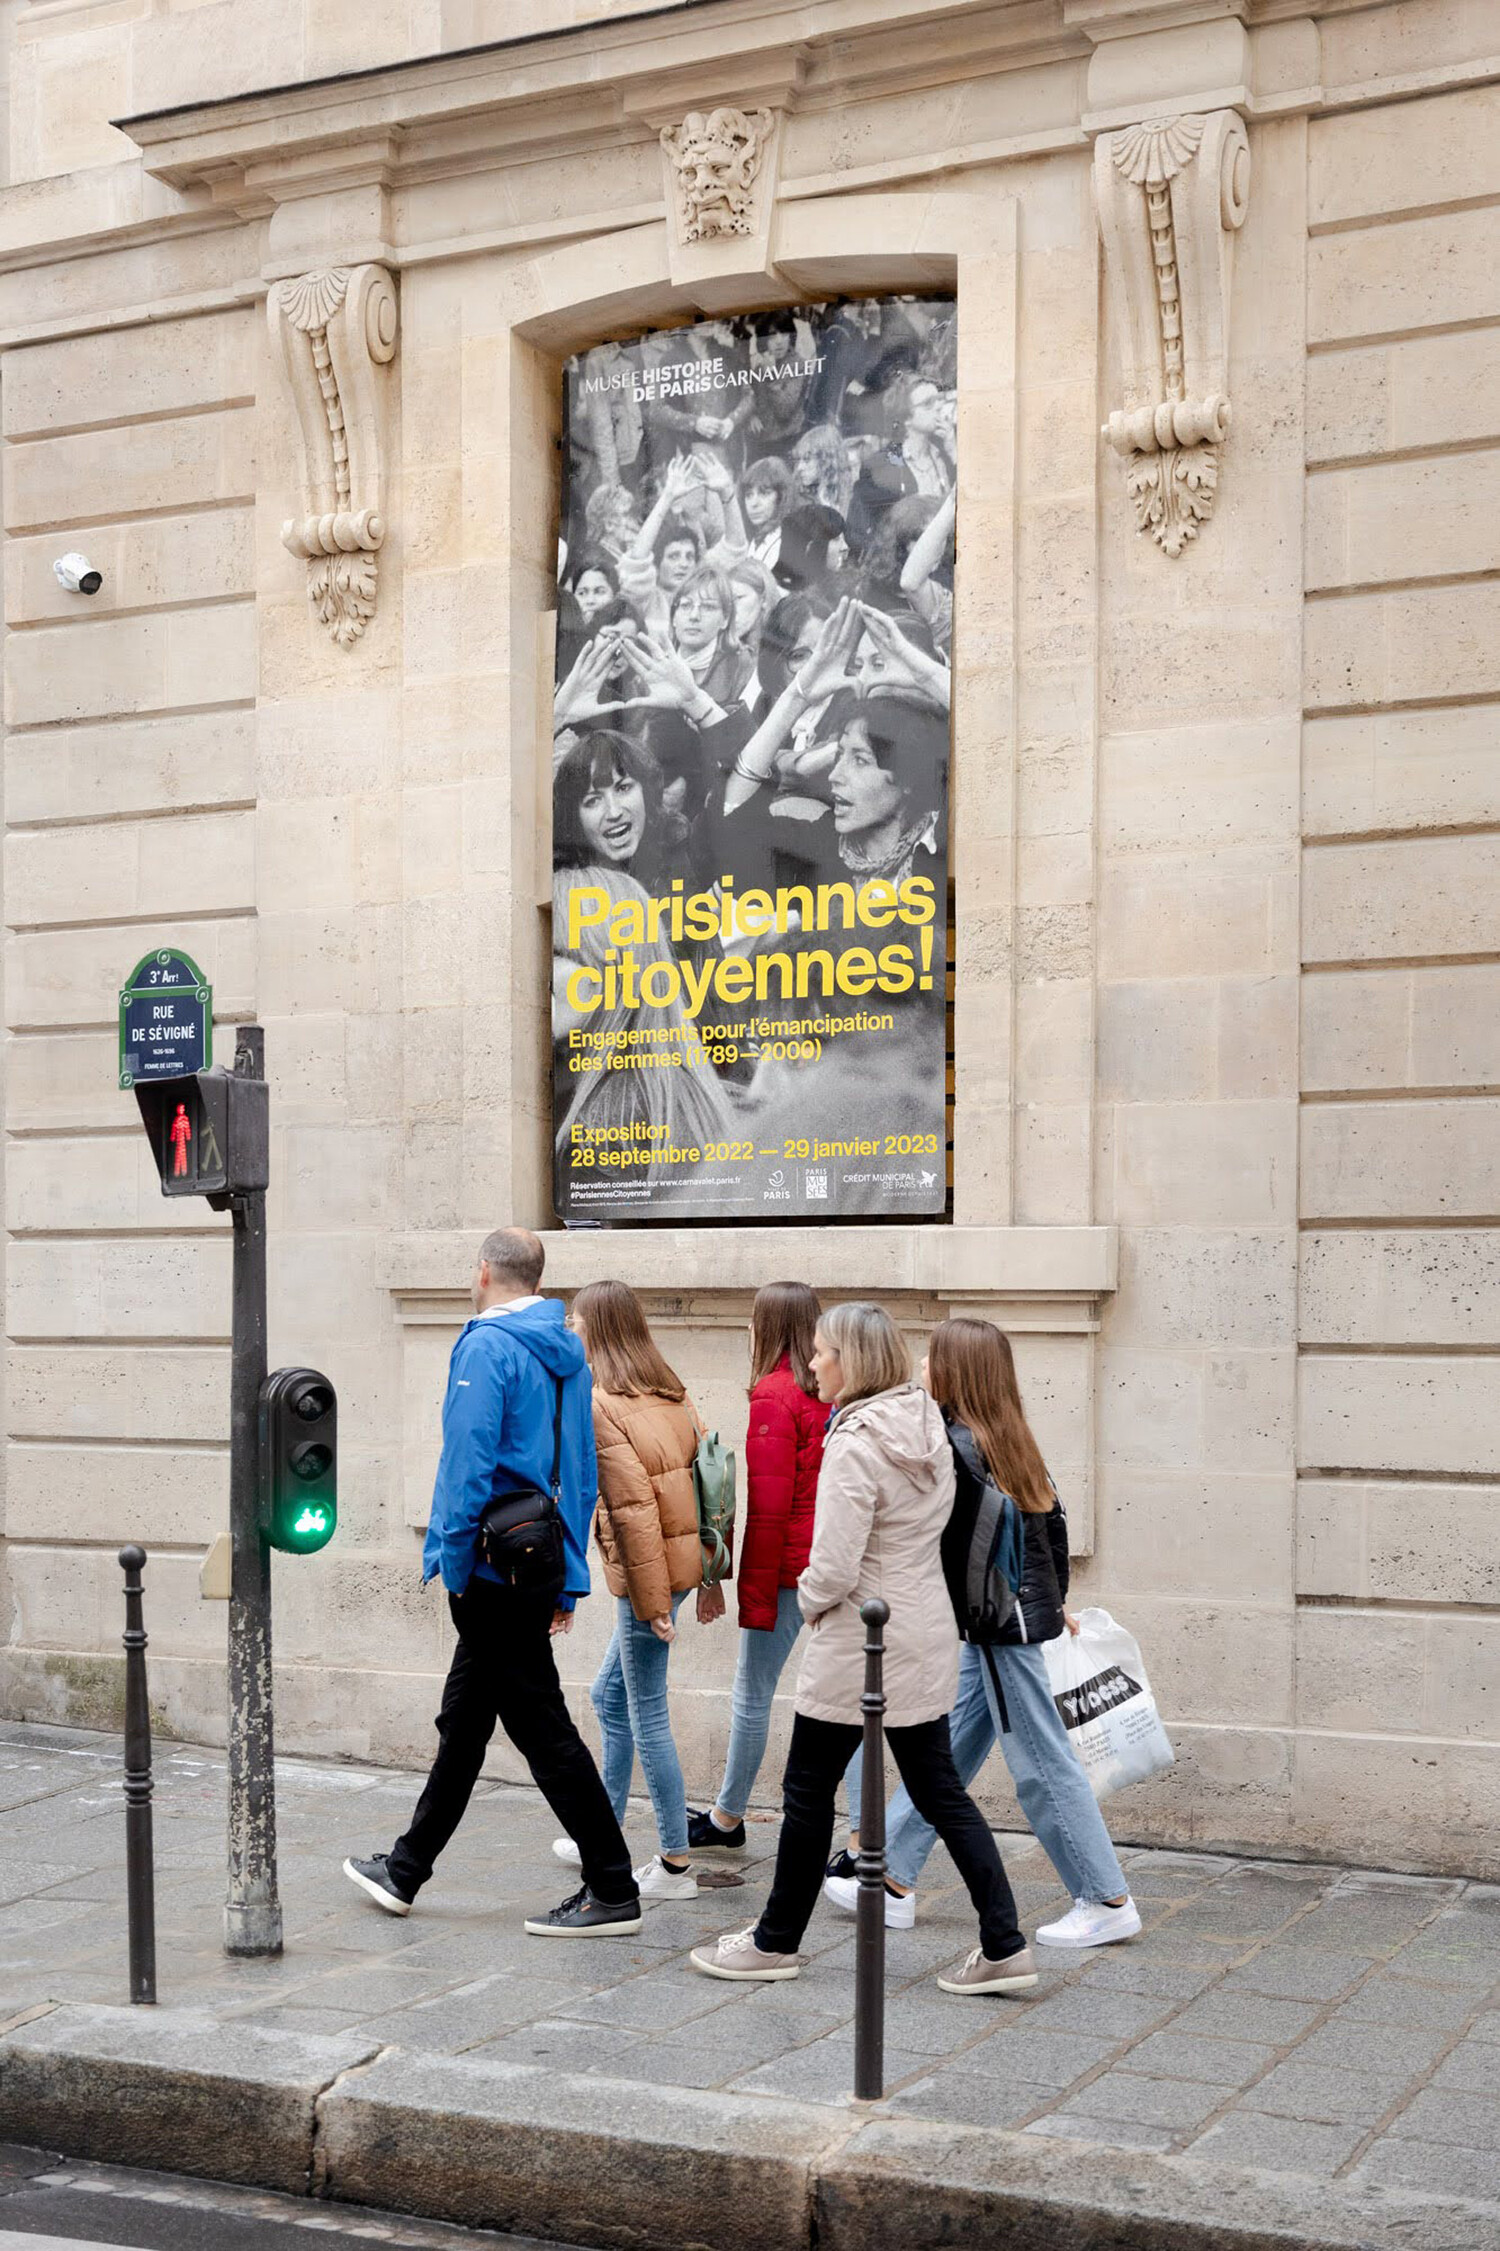 Musée Carnavalet — Parisiennes, Citoyennes! — © 2022, Pierre Pierre